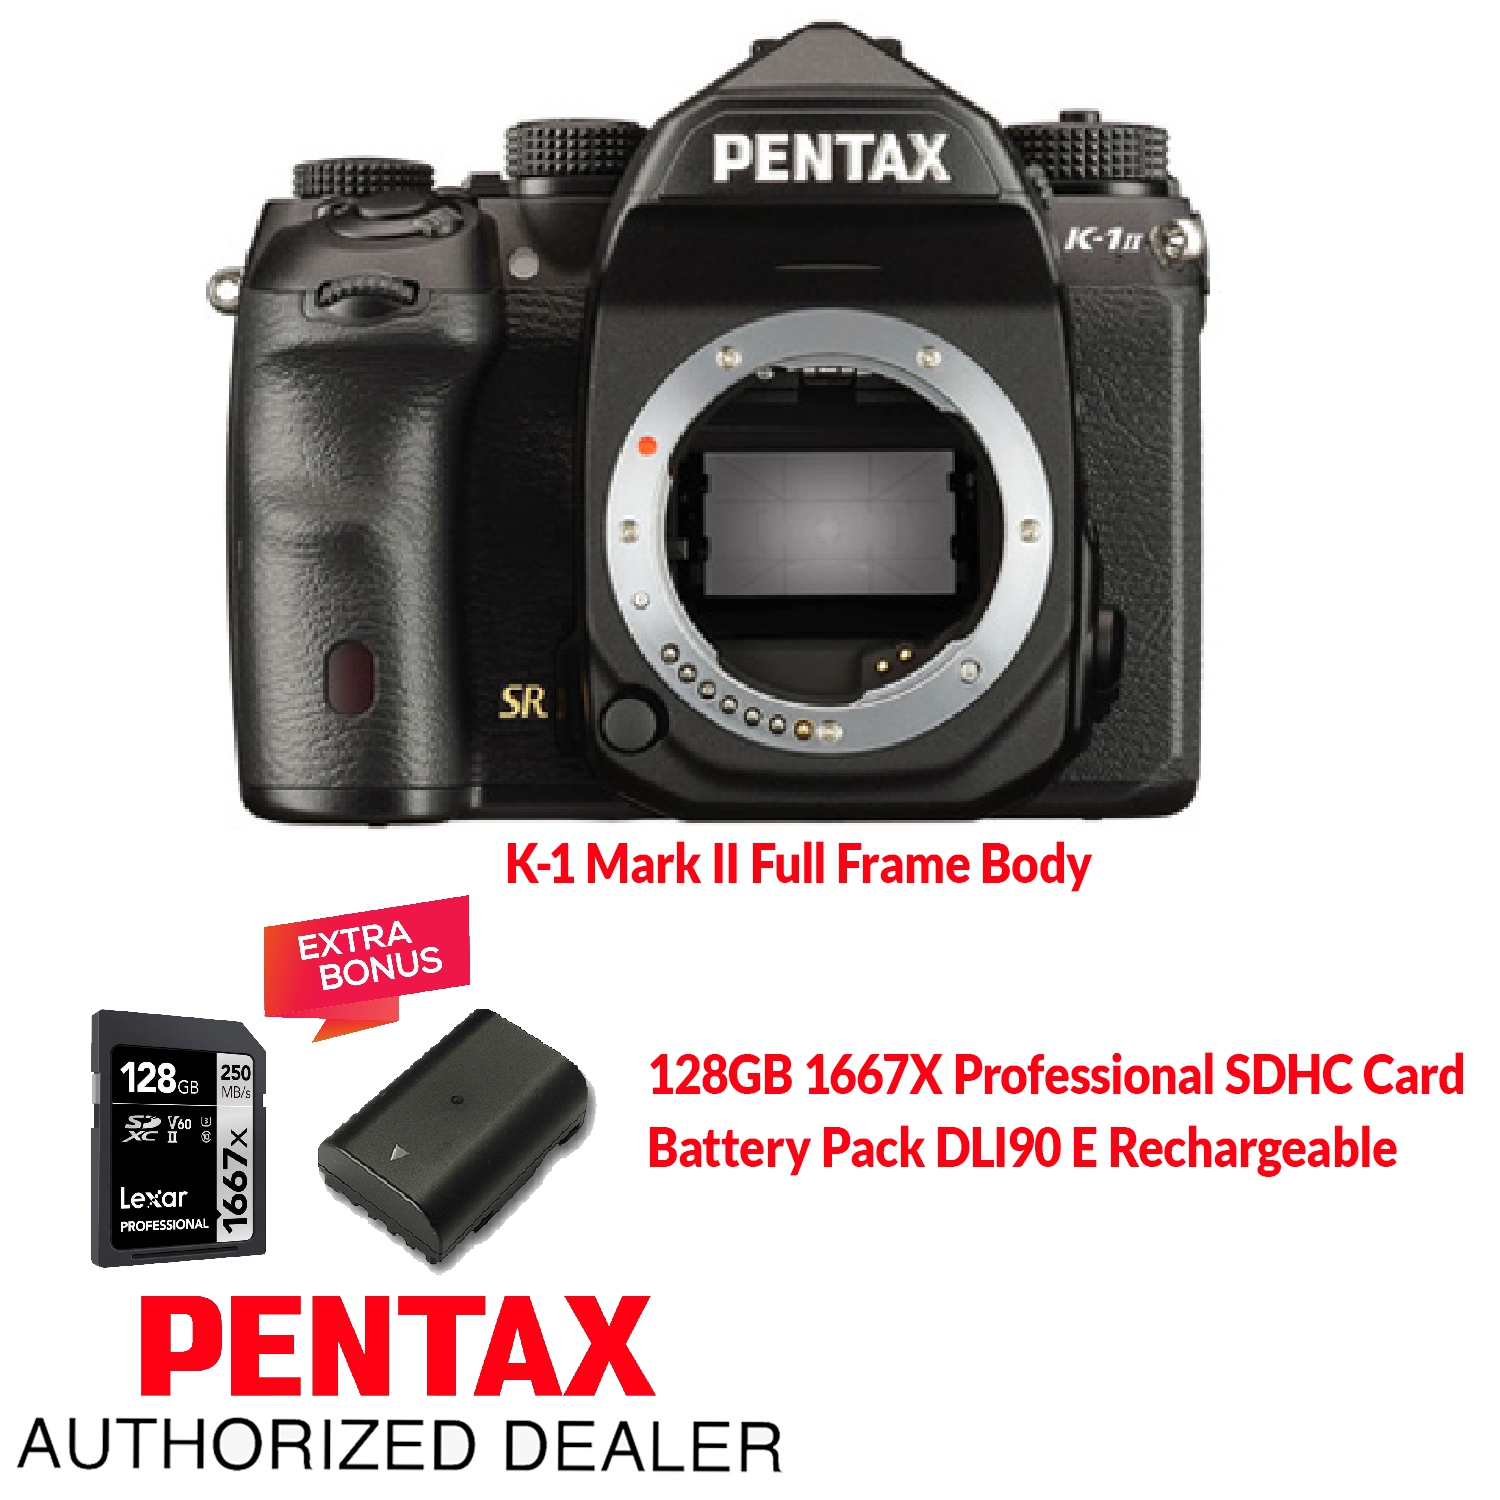 Pentax K-1 Mark II Full Frame Body. Bonus items: Battery DLI90 E + 128GB 1667X SDXC Card